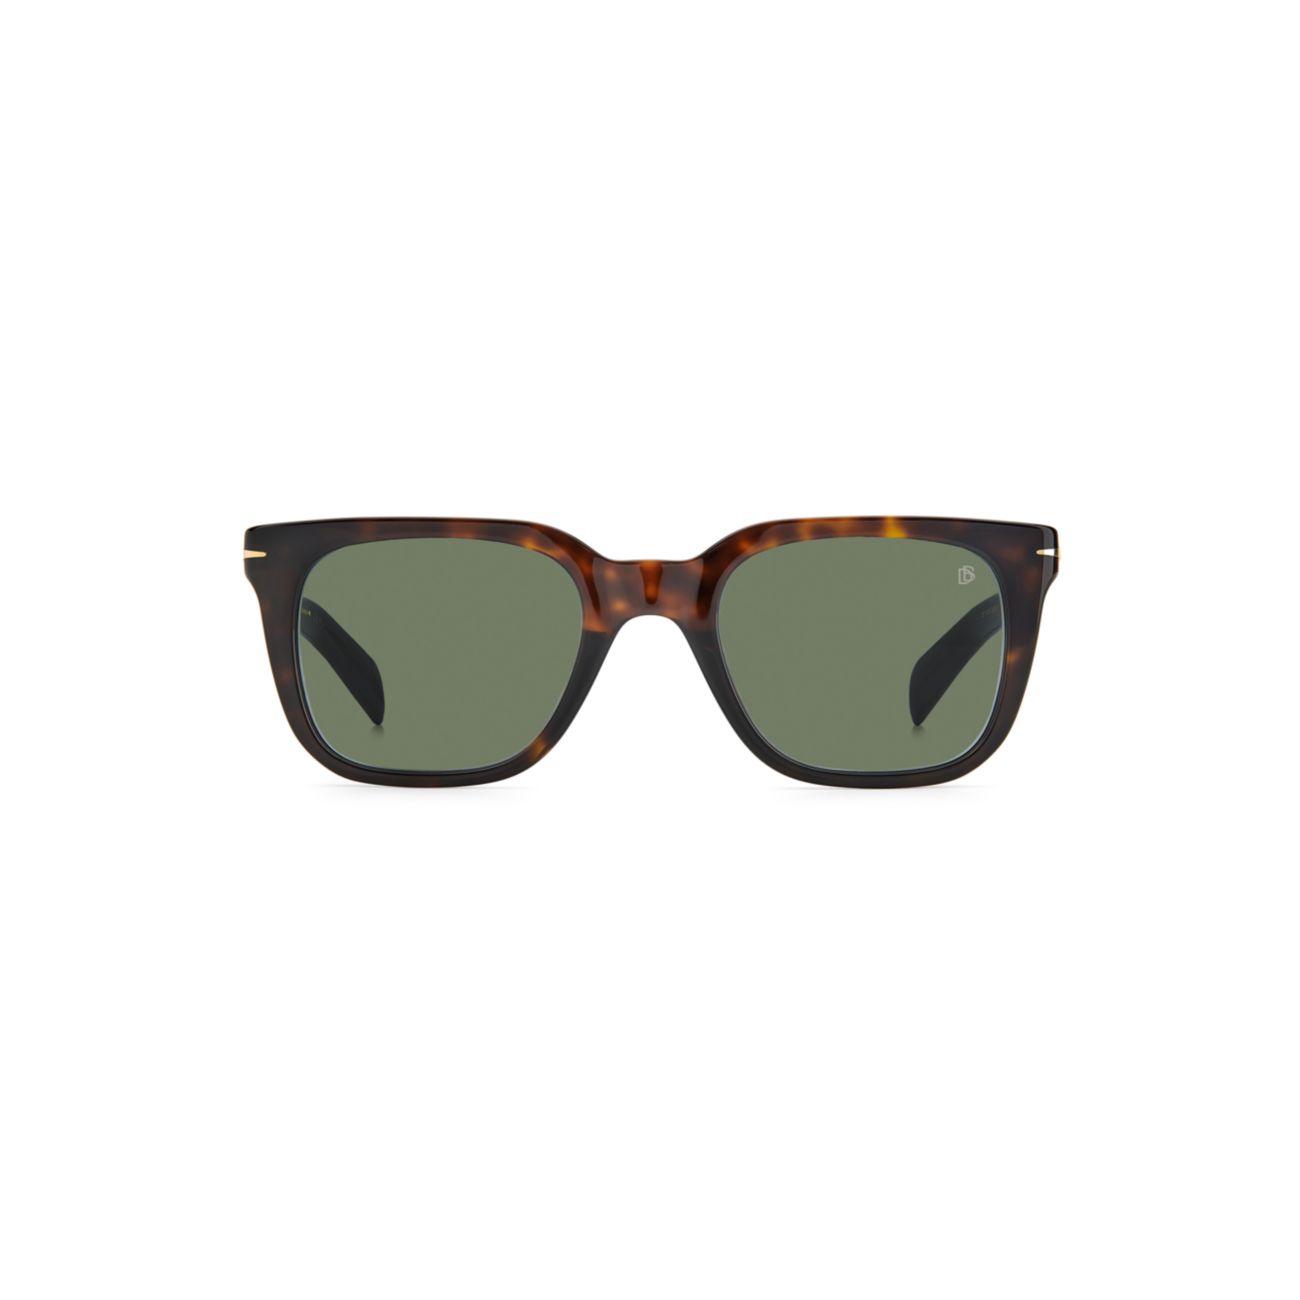 Квадратные солнцезащитные очки 55 мм David Beckham